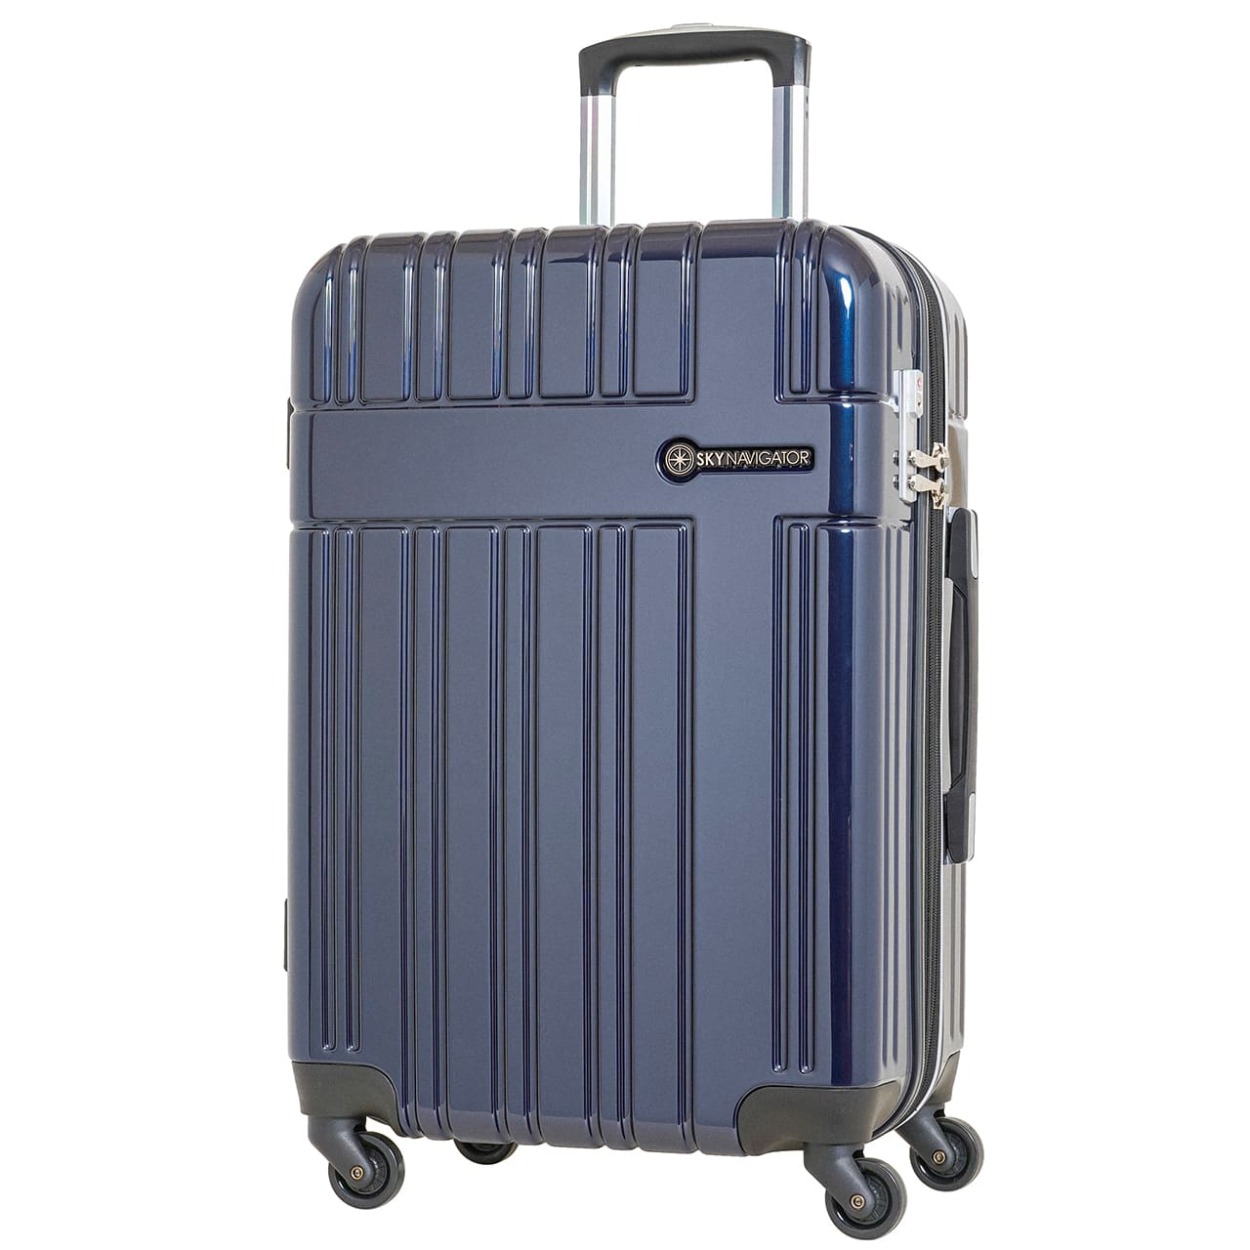 スーツケース M 4泊5日 キャリーケース 中型 おしゃれ 拡張 旅行 かわいい トラベル ビジネス スカイナビゲーター SK-0835-56